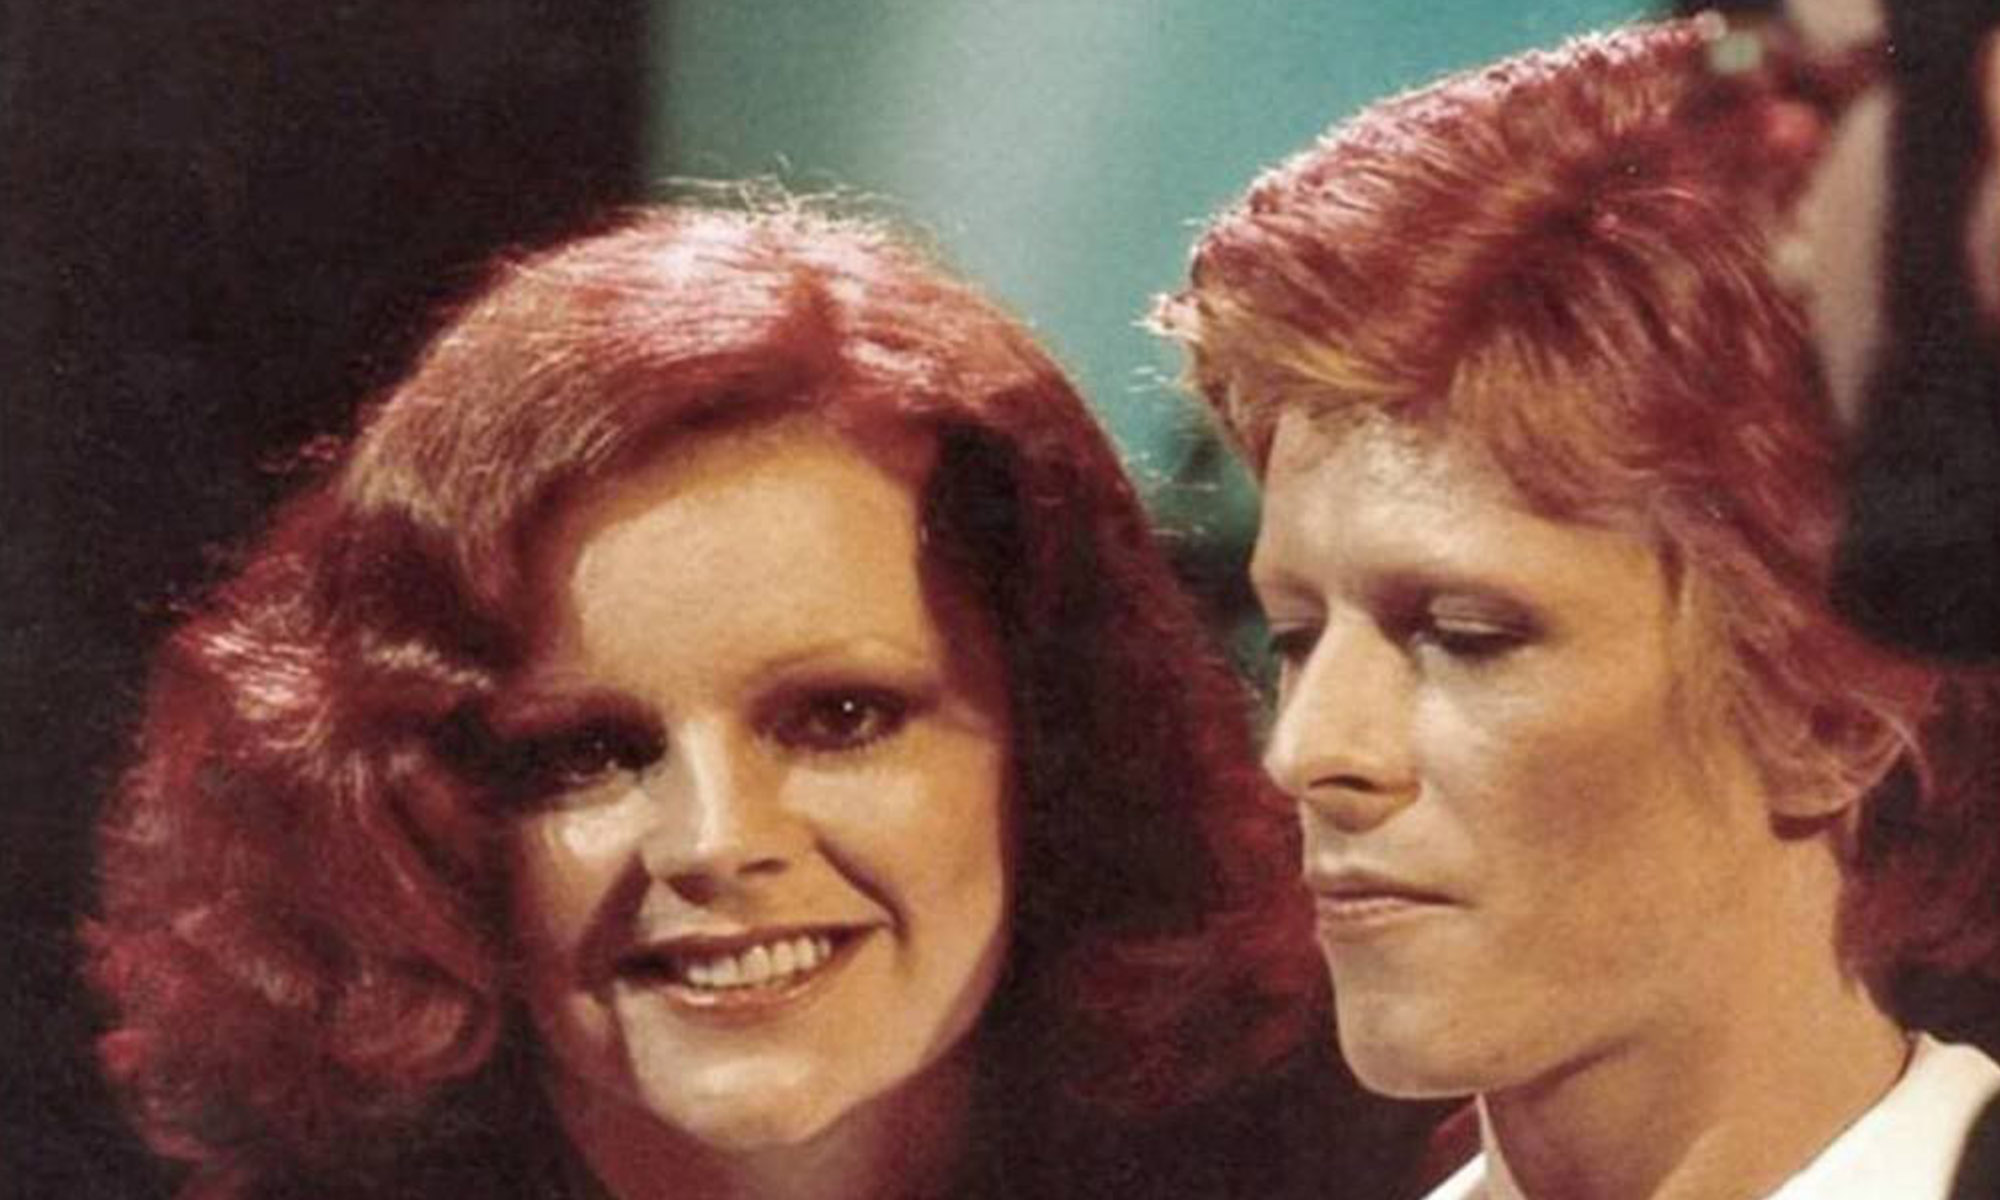 Cherry Vanilla et David Bowie